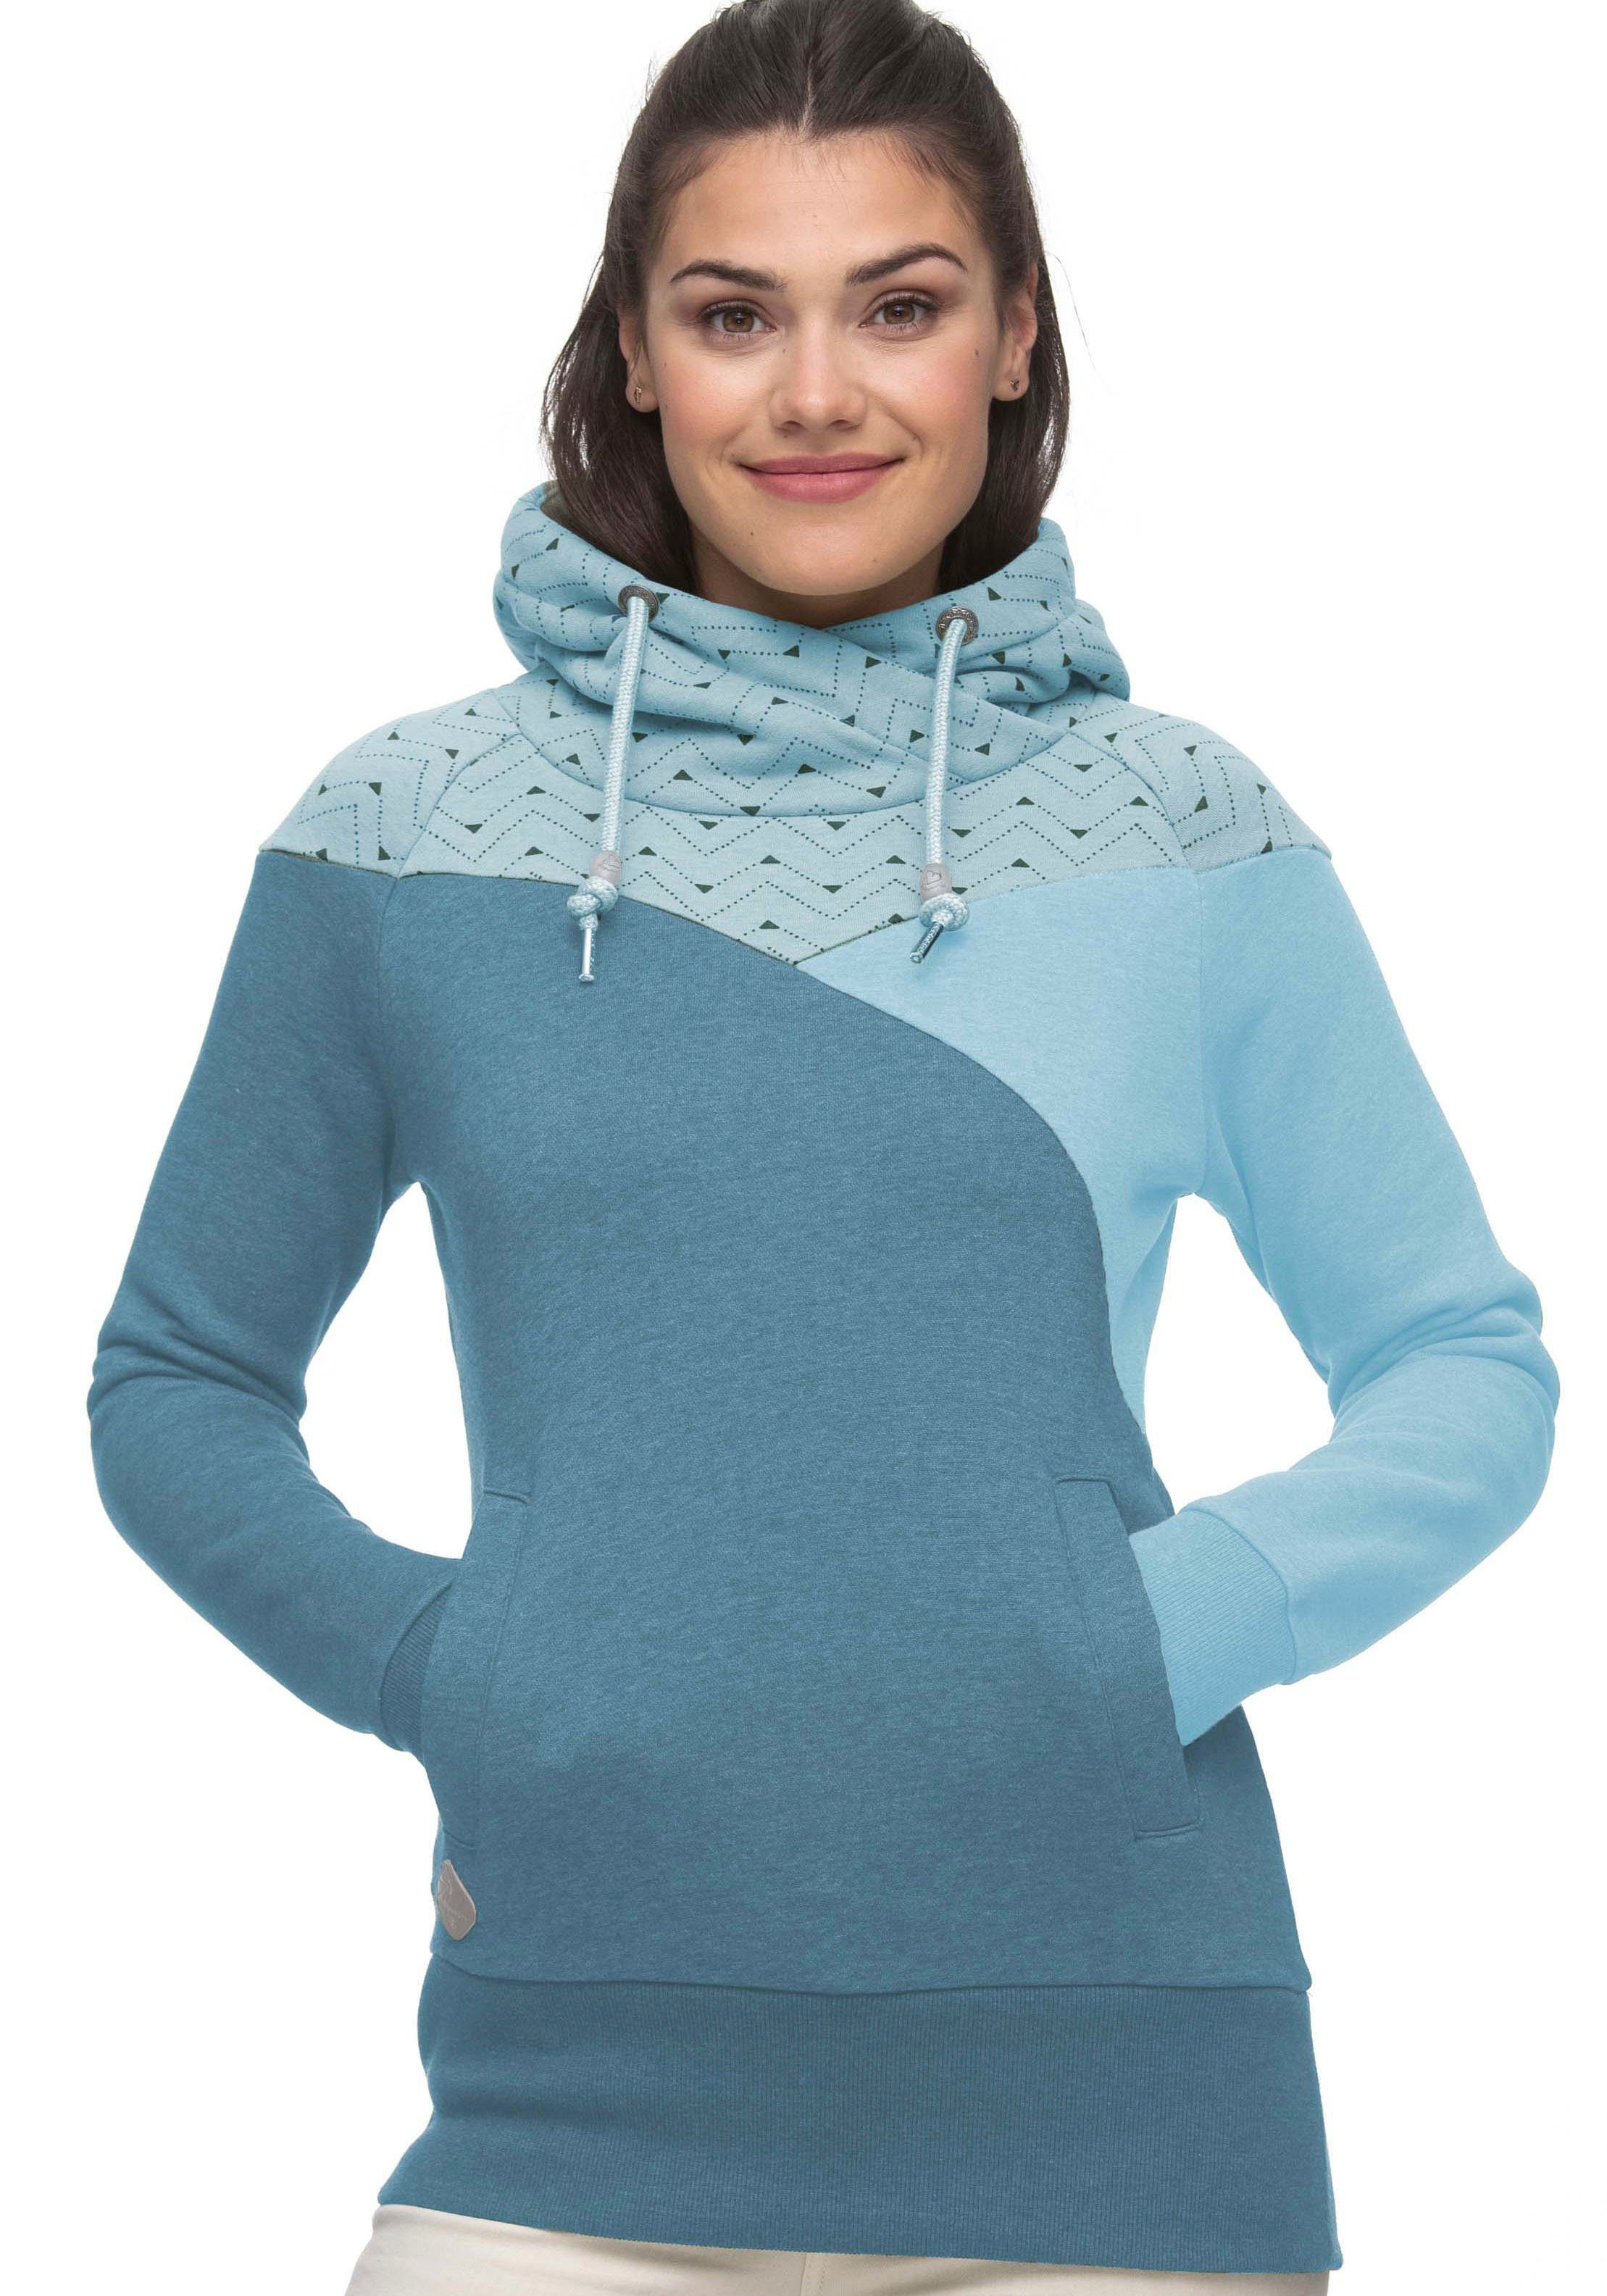 Ragwear Hoodie CHELLI PETA Vegan, verifizierter Ragwear Sweater von im von Colorblocking Design